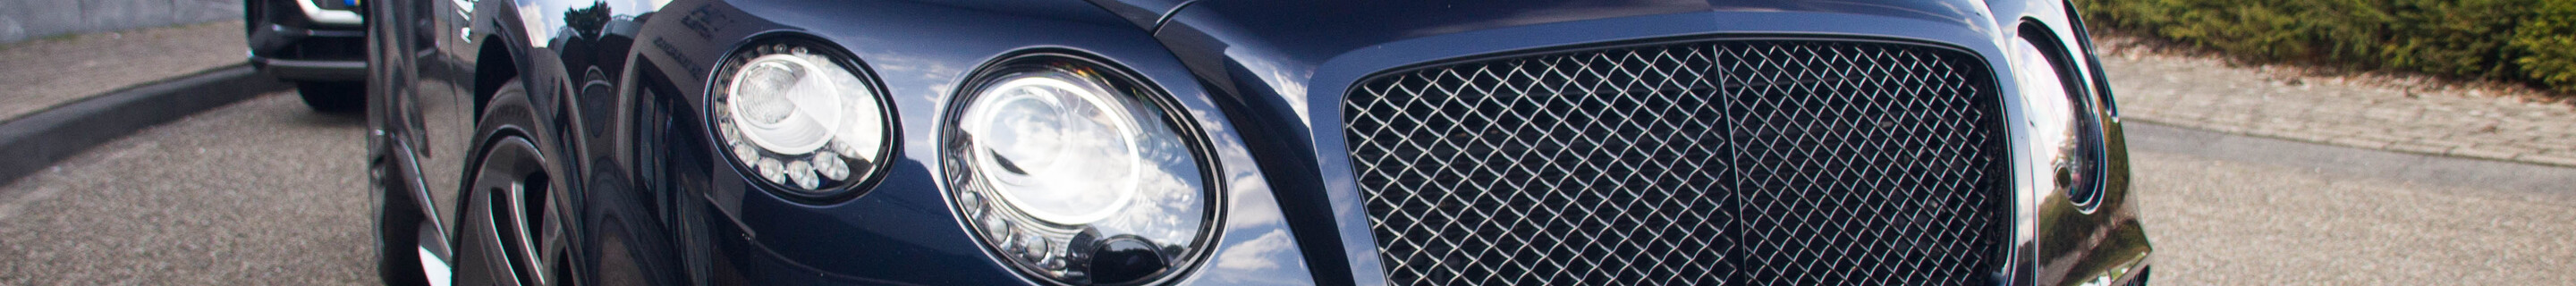 Bentley Continental GTC Speed 2016